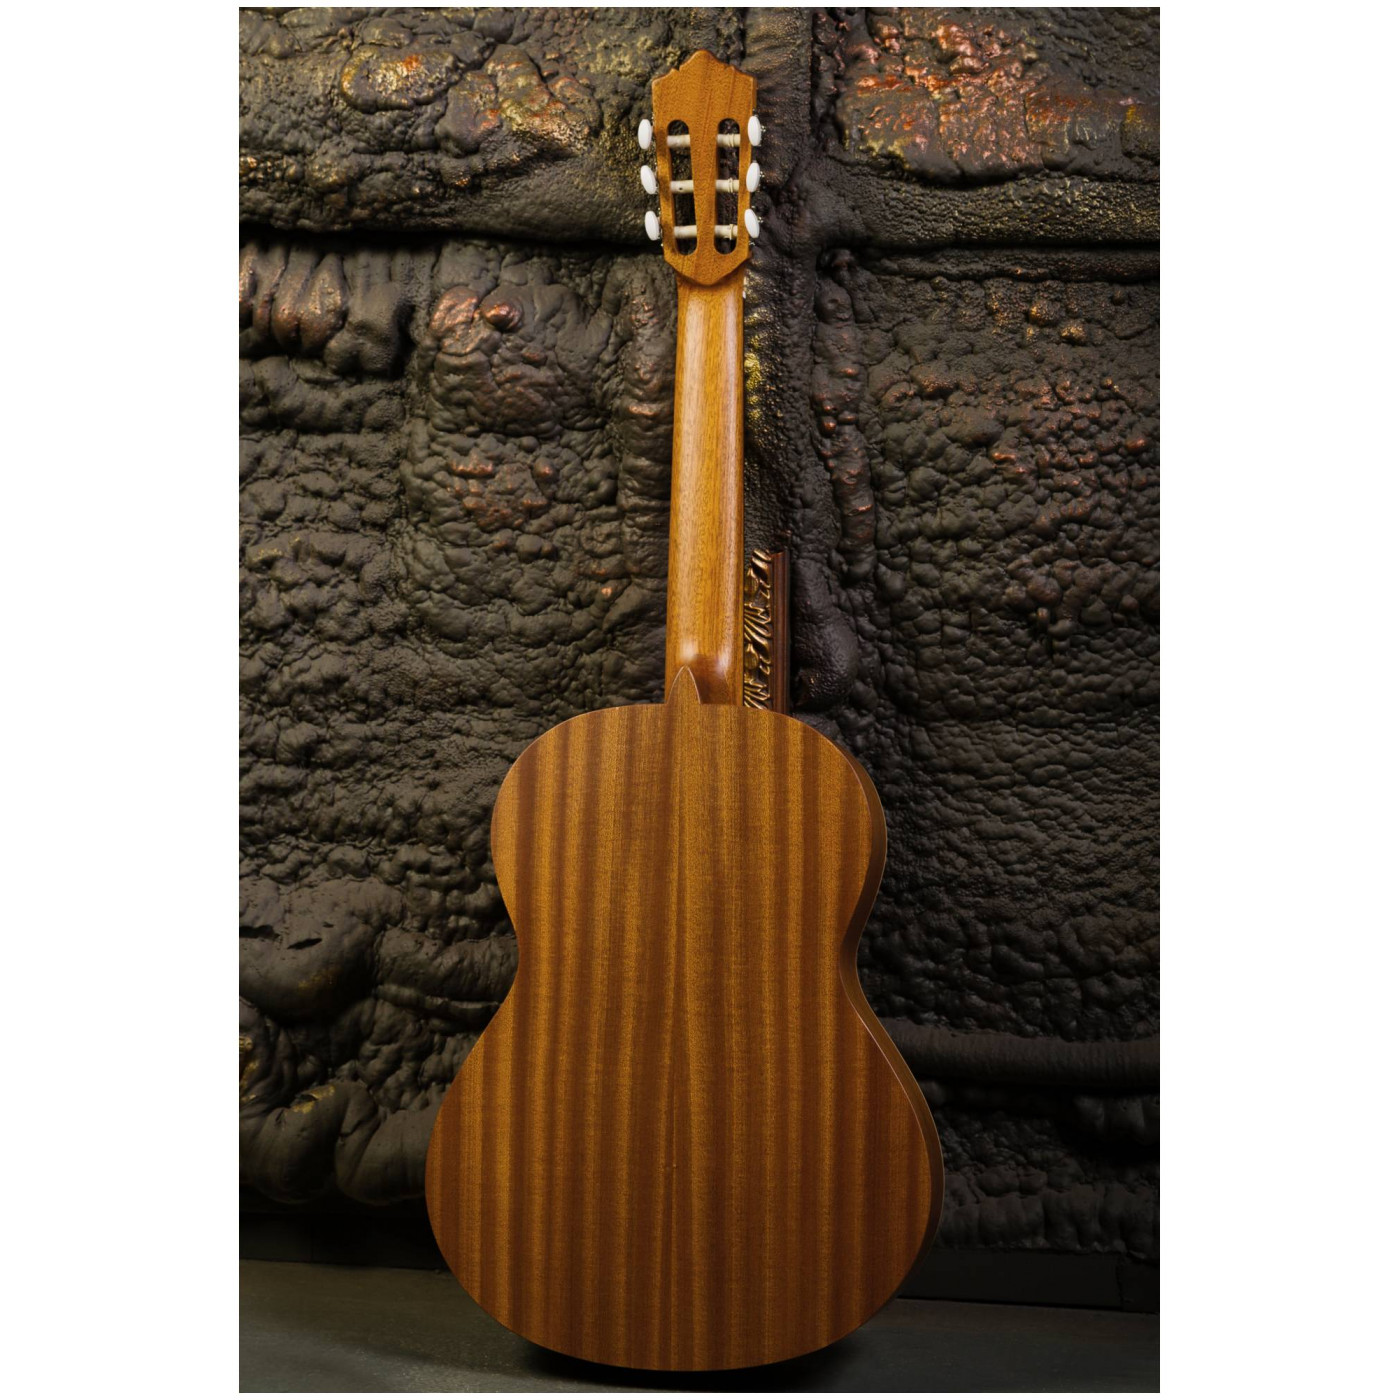 Perez 600 гитара классическая 4/4, верхняя дека цельный кедр, нижняя дека и обечайки красное дерево